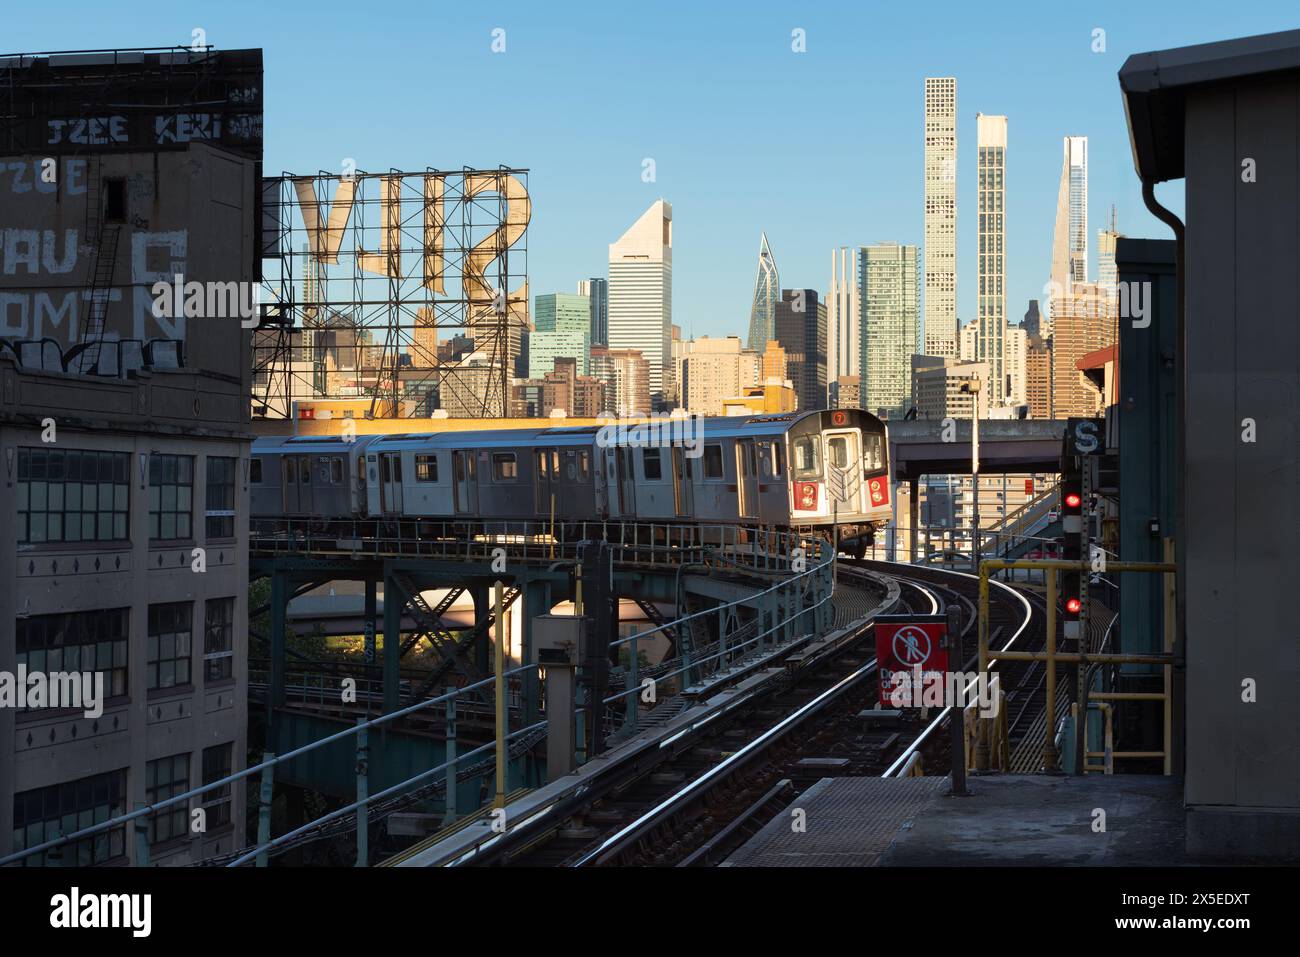 New York City, treno numero 7 e binari della metropolitana sopraelevati a Long Island City con vista mattutina dei grattacieli dell'Upper East Side (Manhattan) Foto Stock